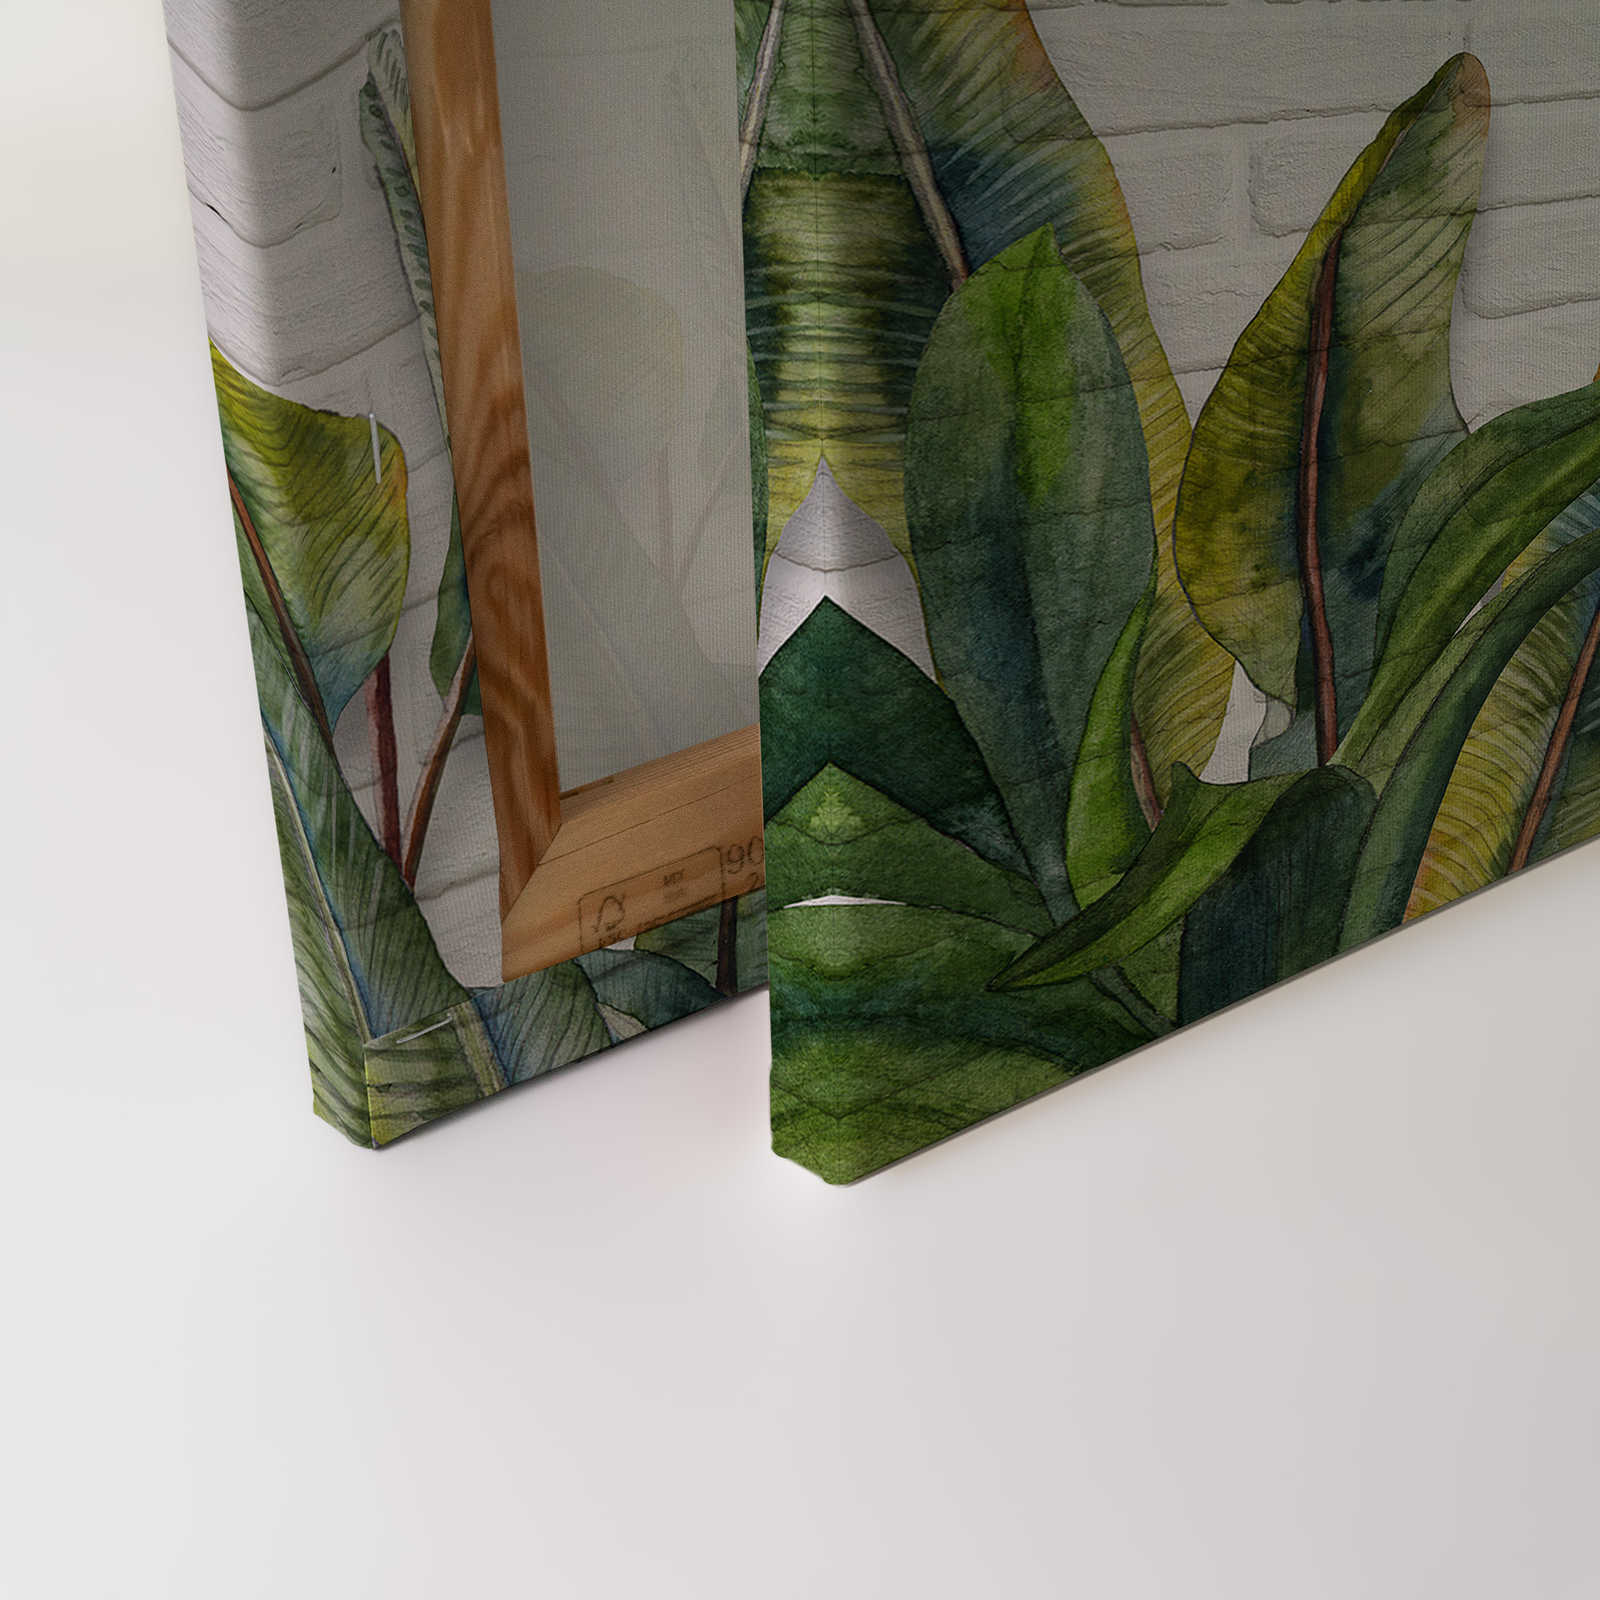             Quadro su tela con foglie davanti a una parete di mattoni bianchi - 0,90 m x 0,60 m
        